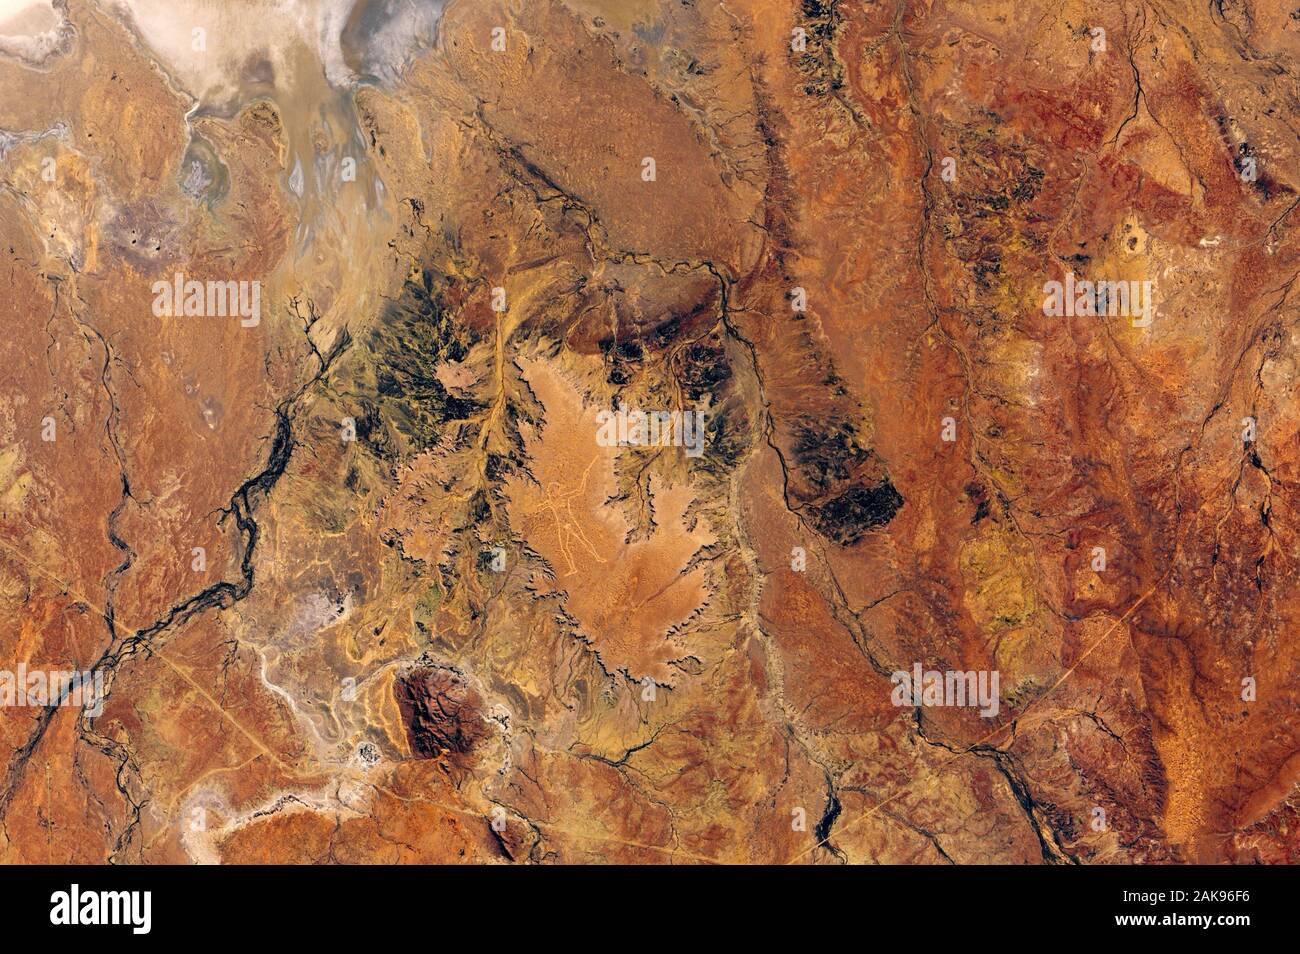 Der marree Mann - eine geheimnisvolle Arbeit von irdenen Kunst hat die internationale Aufmerksamkeit auf sich gezogen. In einem Plateau in South Australia als aus dem Weltraum o gesehen geätzt Stockfoto